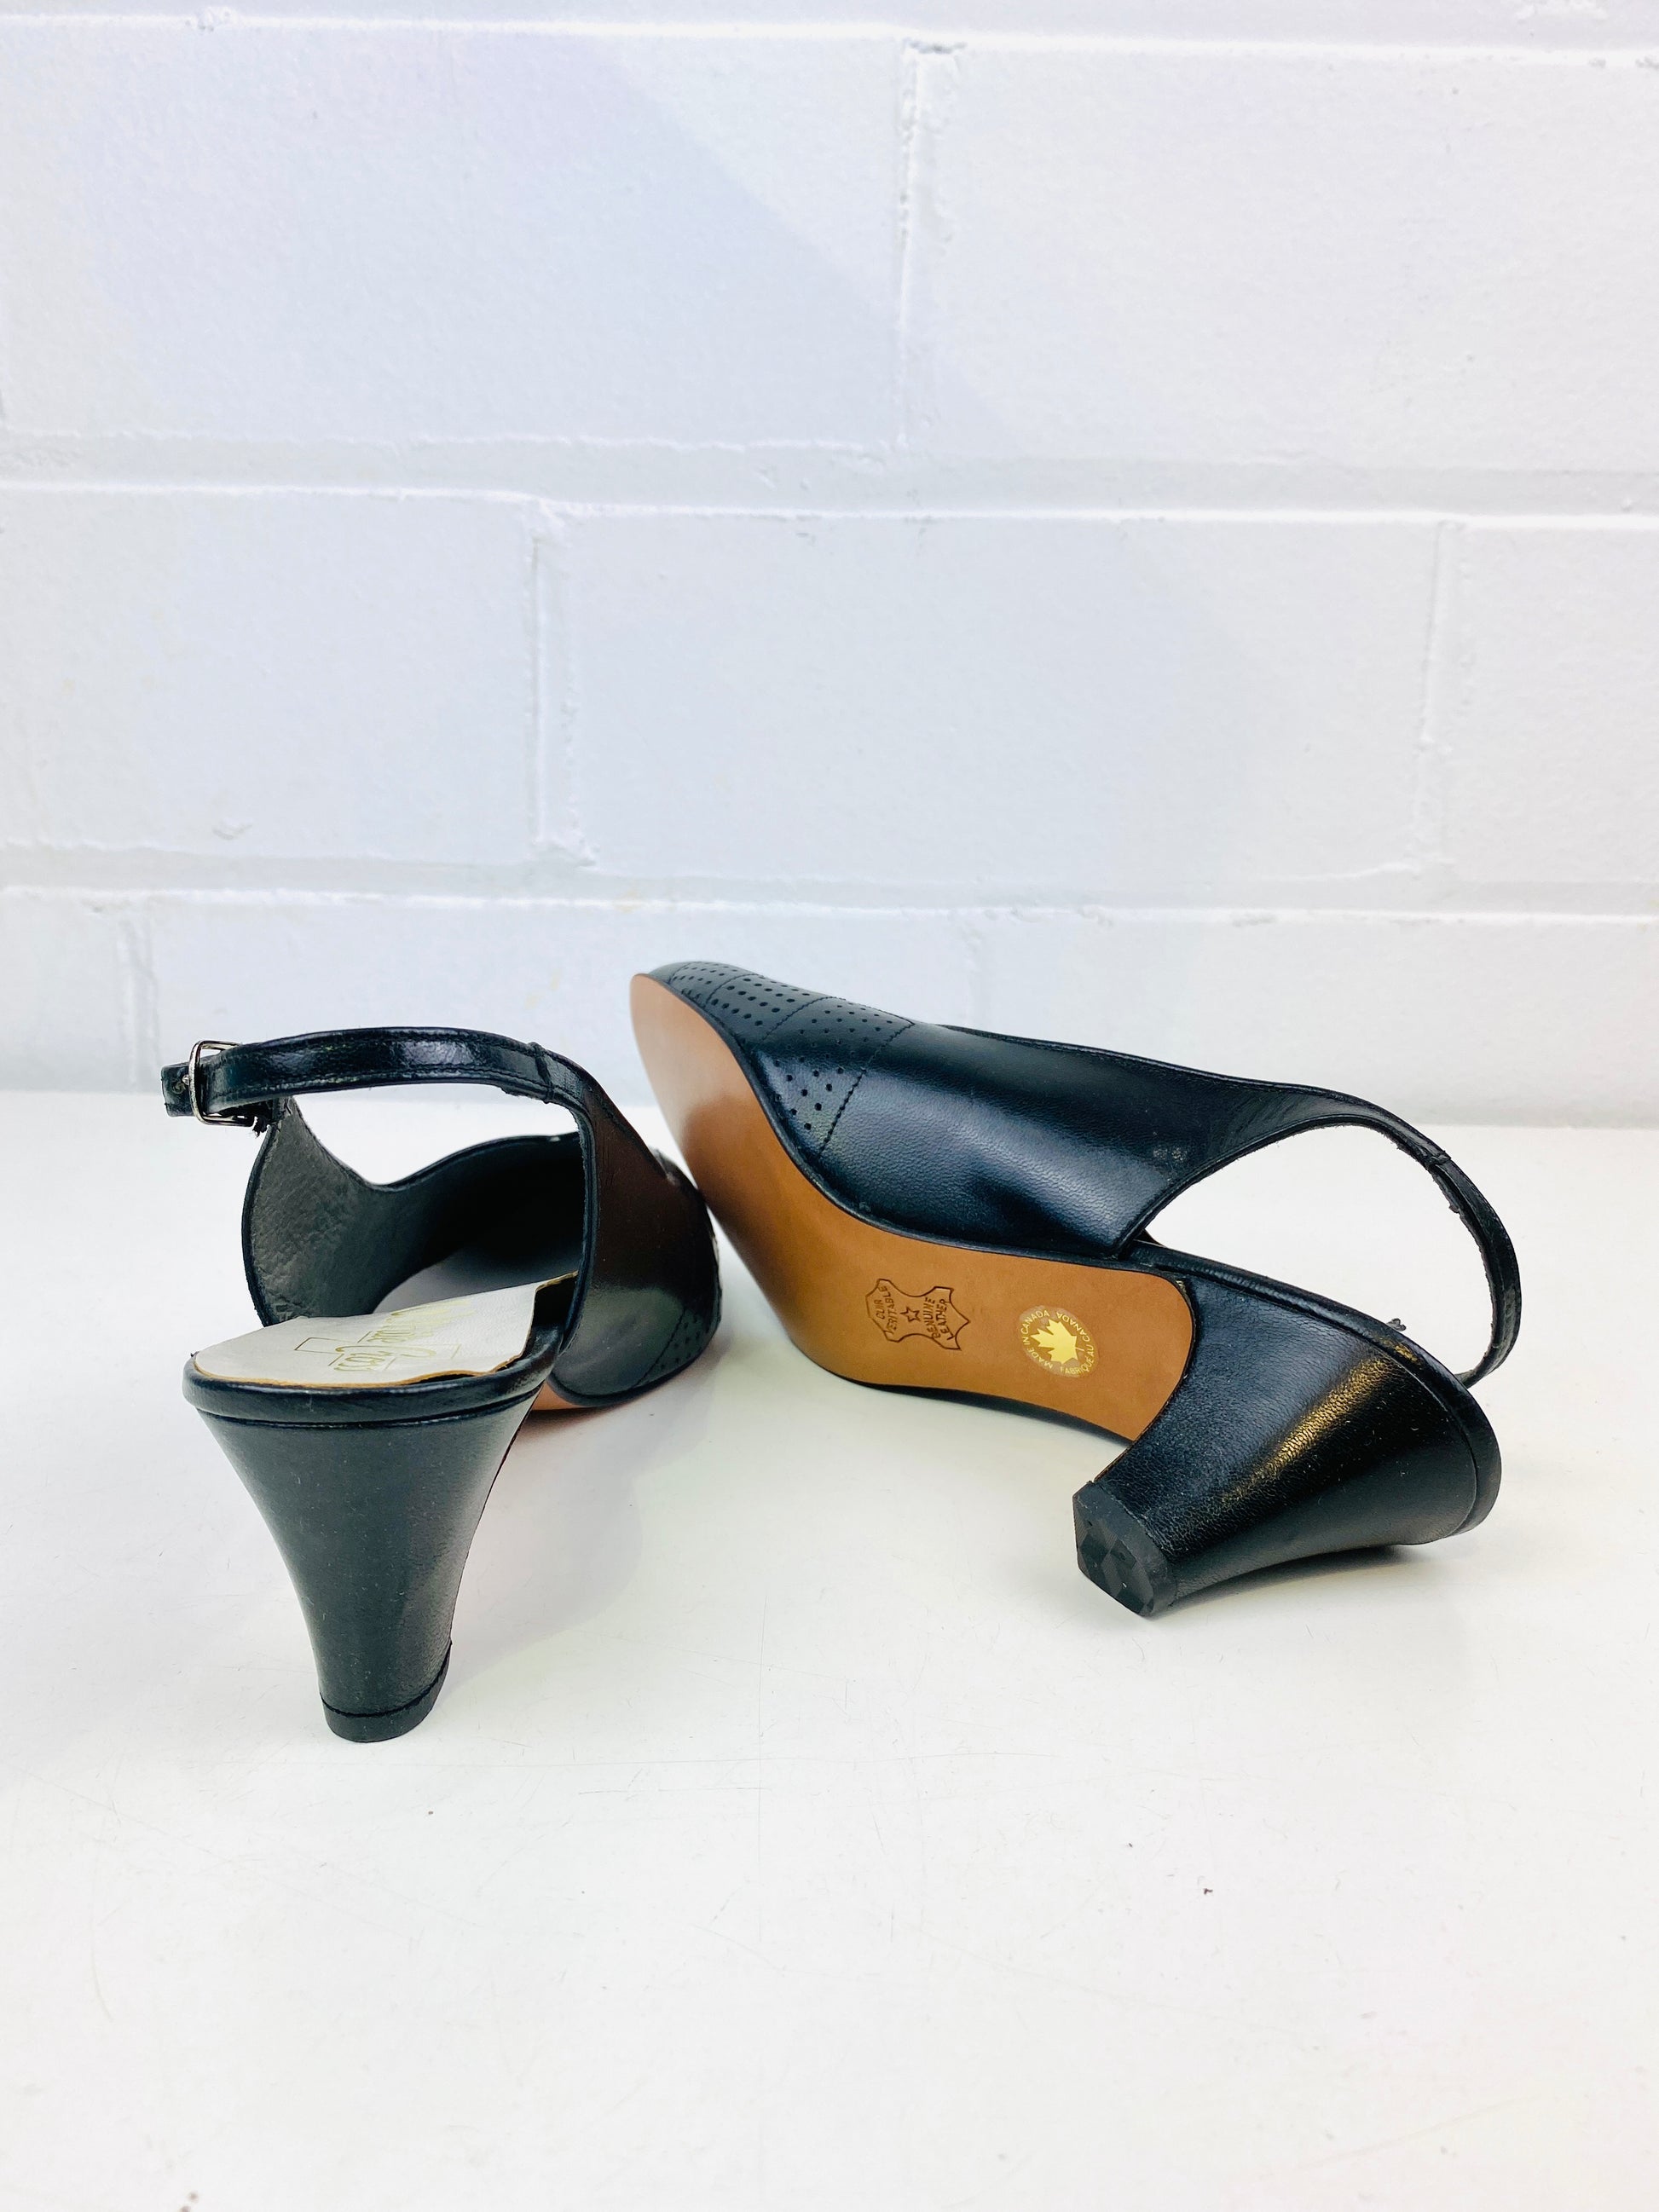 Vintage Deadstock Shoes, Women's 1980s Black Leather Mid-Heel Sling-Back Pumps, NOS, 8577